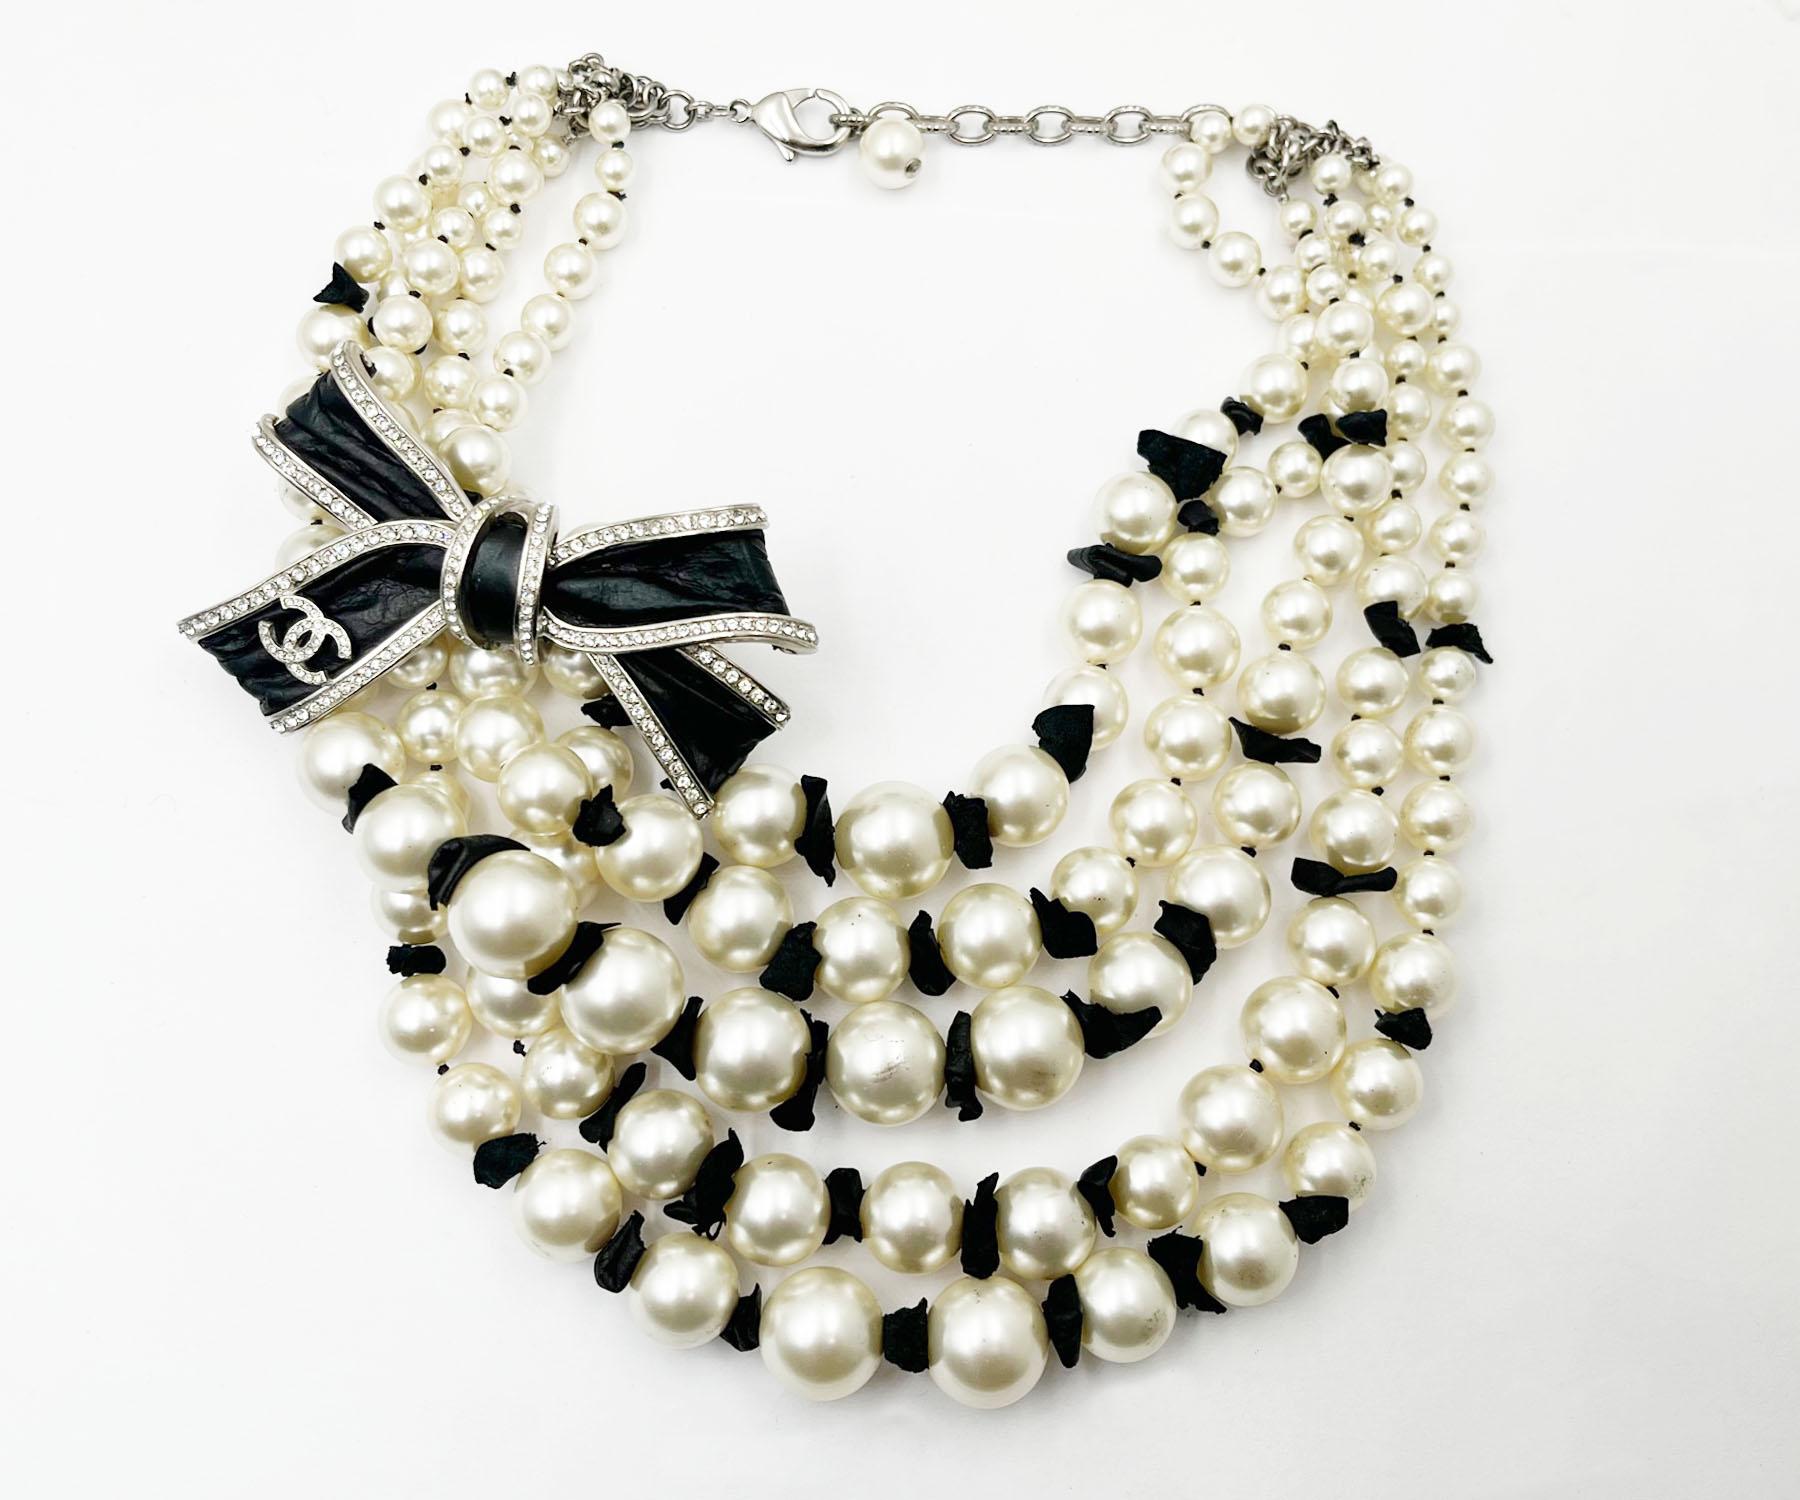 Chanel Silber CC Schwarzes Band Leder 5strang Perle Kurze Halskette

* Markiert 16
* Hergestellt in Frankreich
* Kommt mit der Originalverpackung und Staubbeutel

-Es ist ungefähr 17